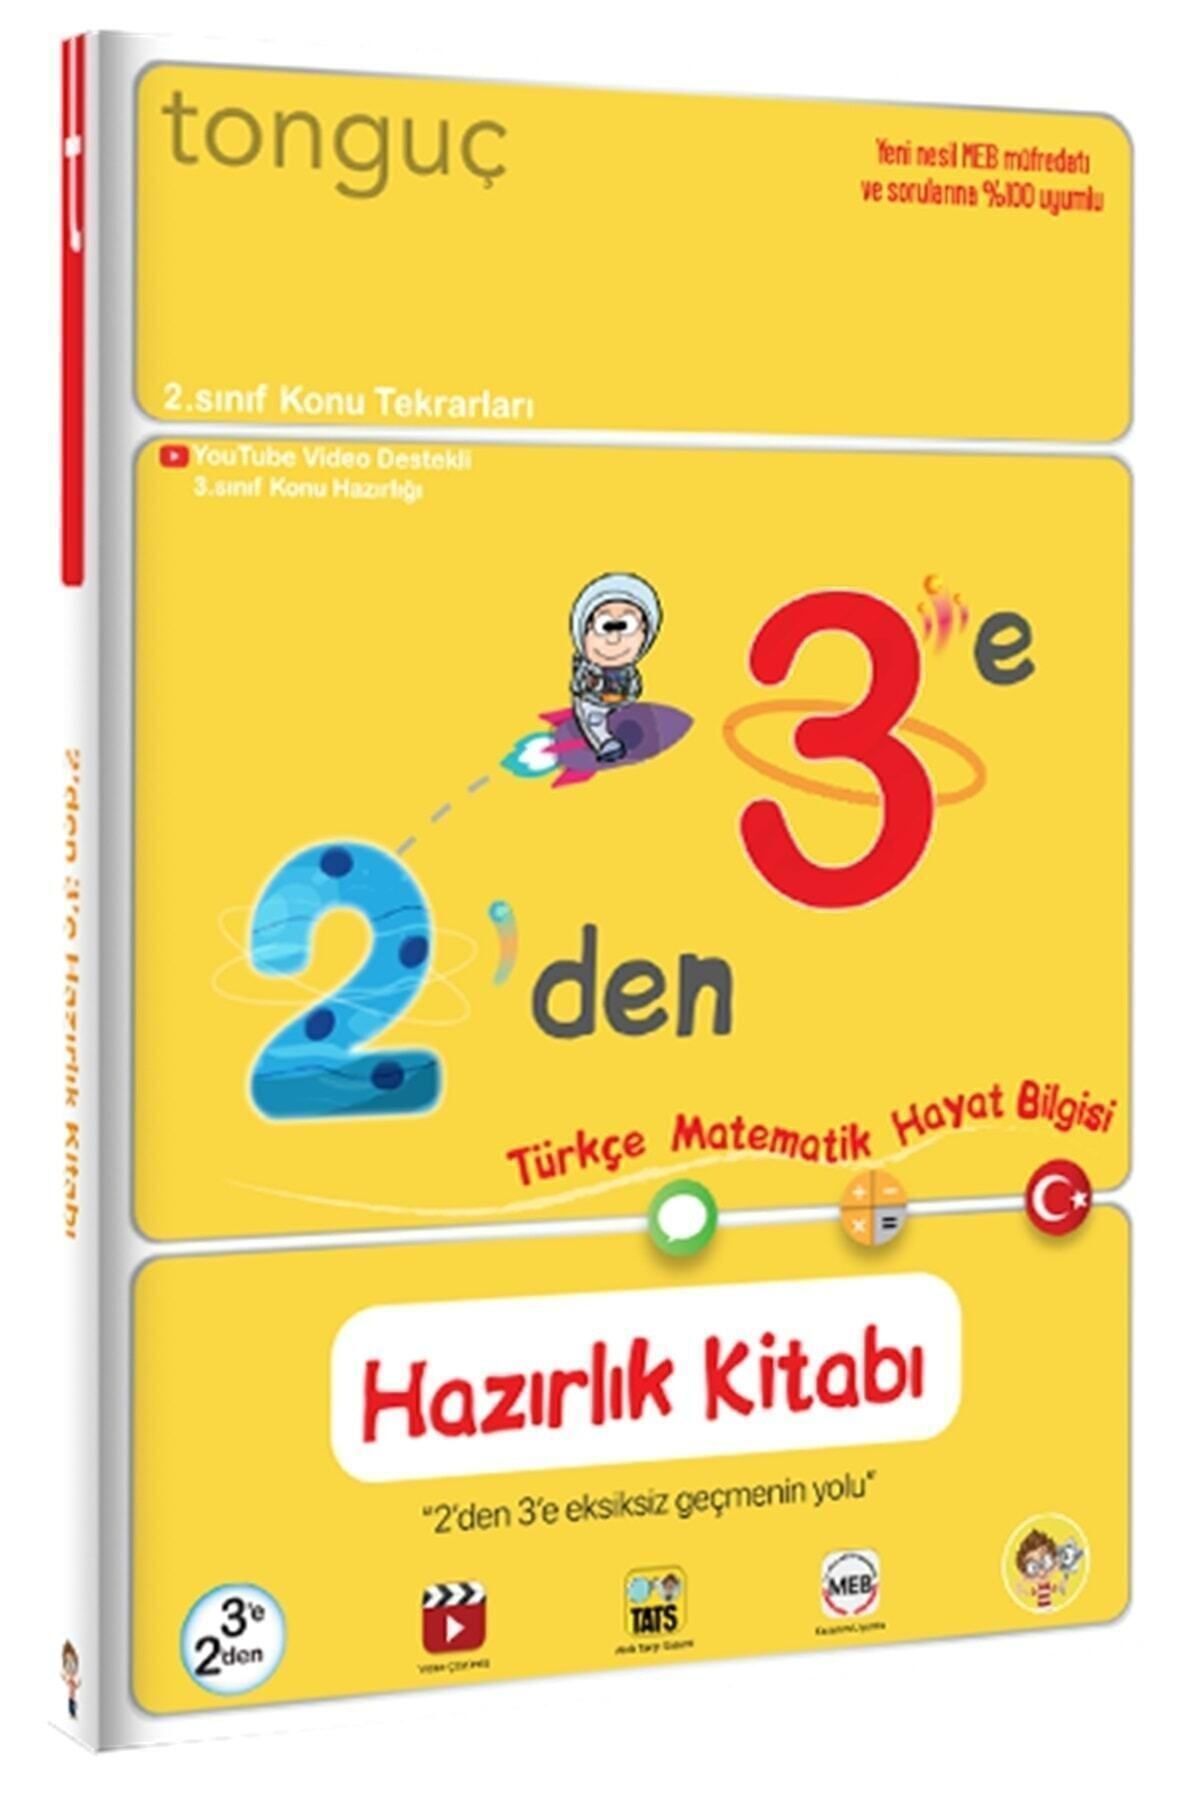 Tonguç Yayınları Tonguç 2'den 3'e Hazırlık Kitabı